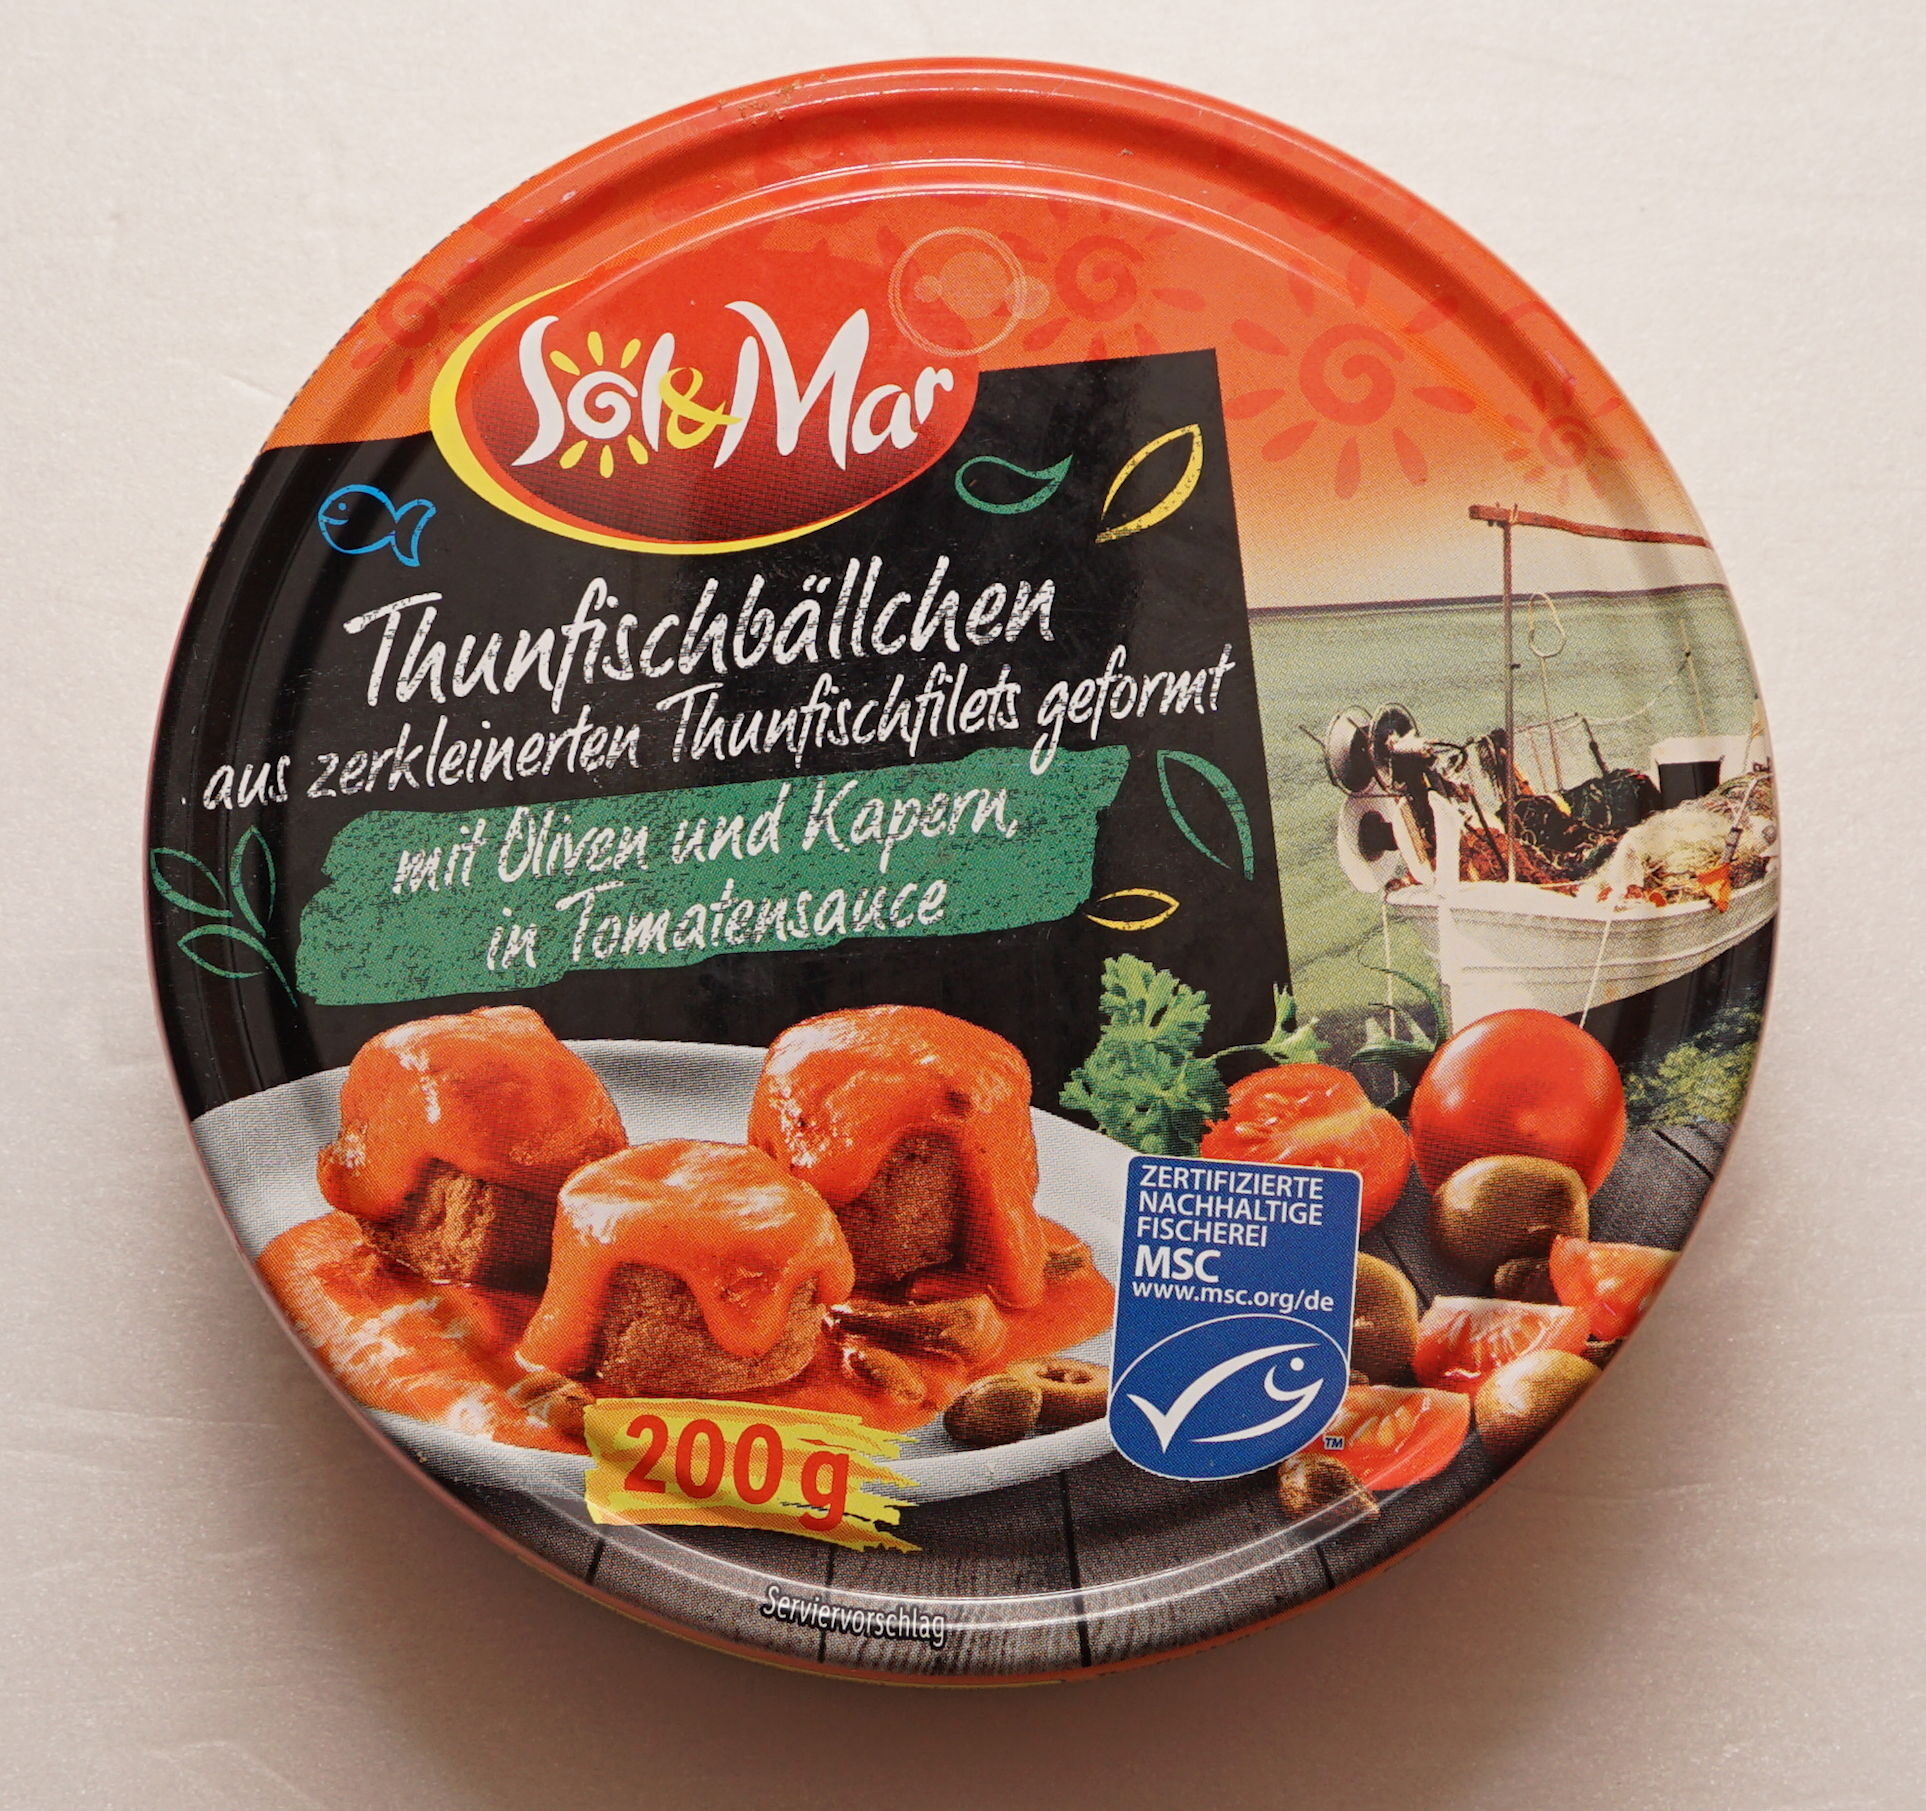 Thunfischbällchen mit Oliven und Kapern in Tomatensoße - Product - de